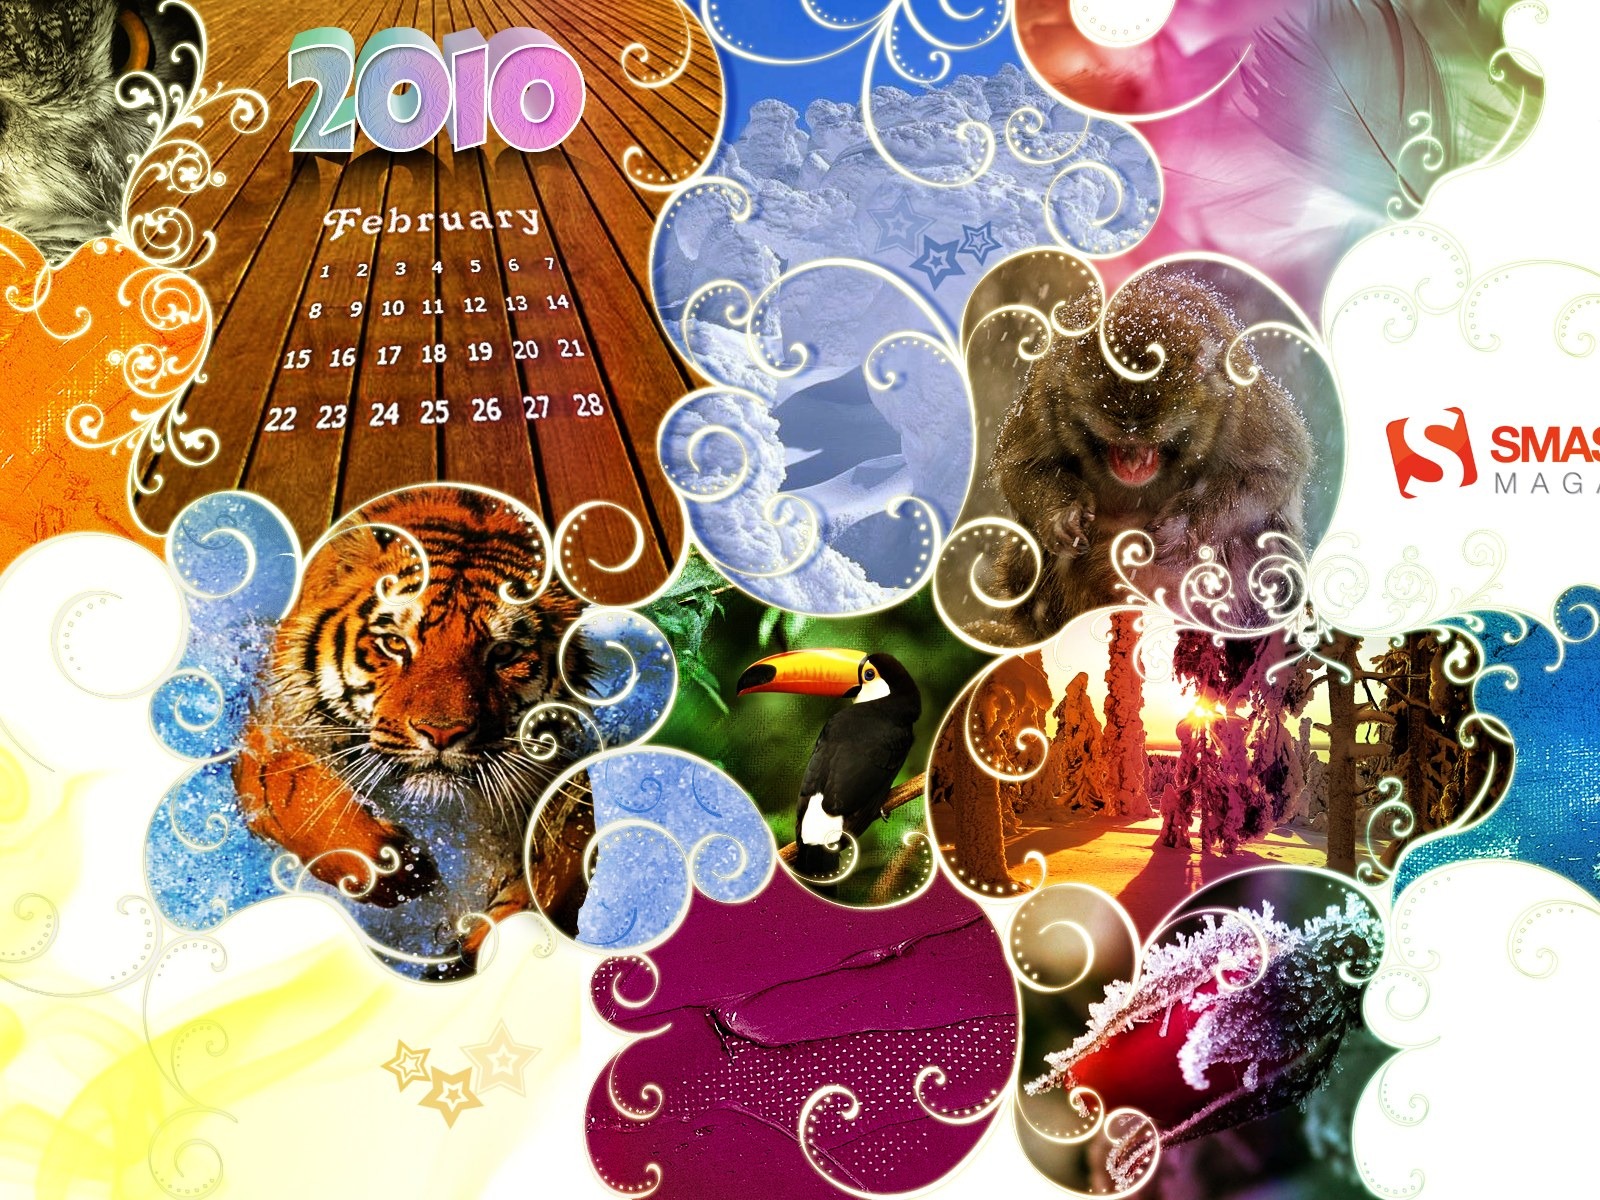 února 2010 Kalendář Wallpaper Creative #1 - 1600x1200